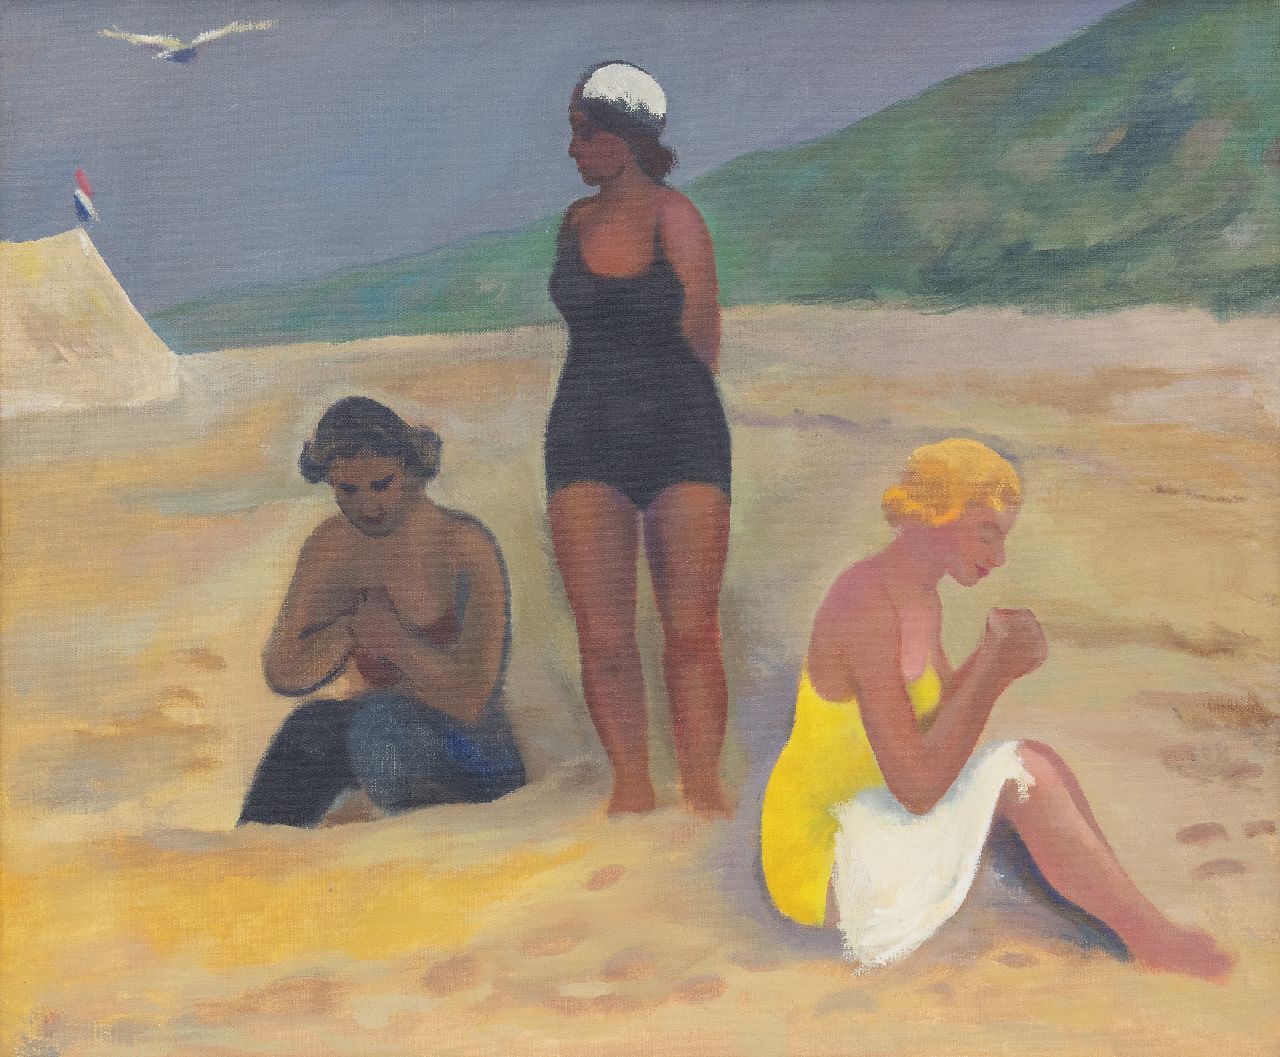 Kleima E.A.  | 'Ekke' Abel Kleima, 3 dames aan het strand, Schiermonnikoog, olieverf op doek 50,4 x 60,5 cm, gesigneerd met initialen op spieraam en gedateerd op spieraam 1939